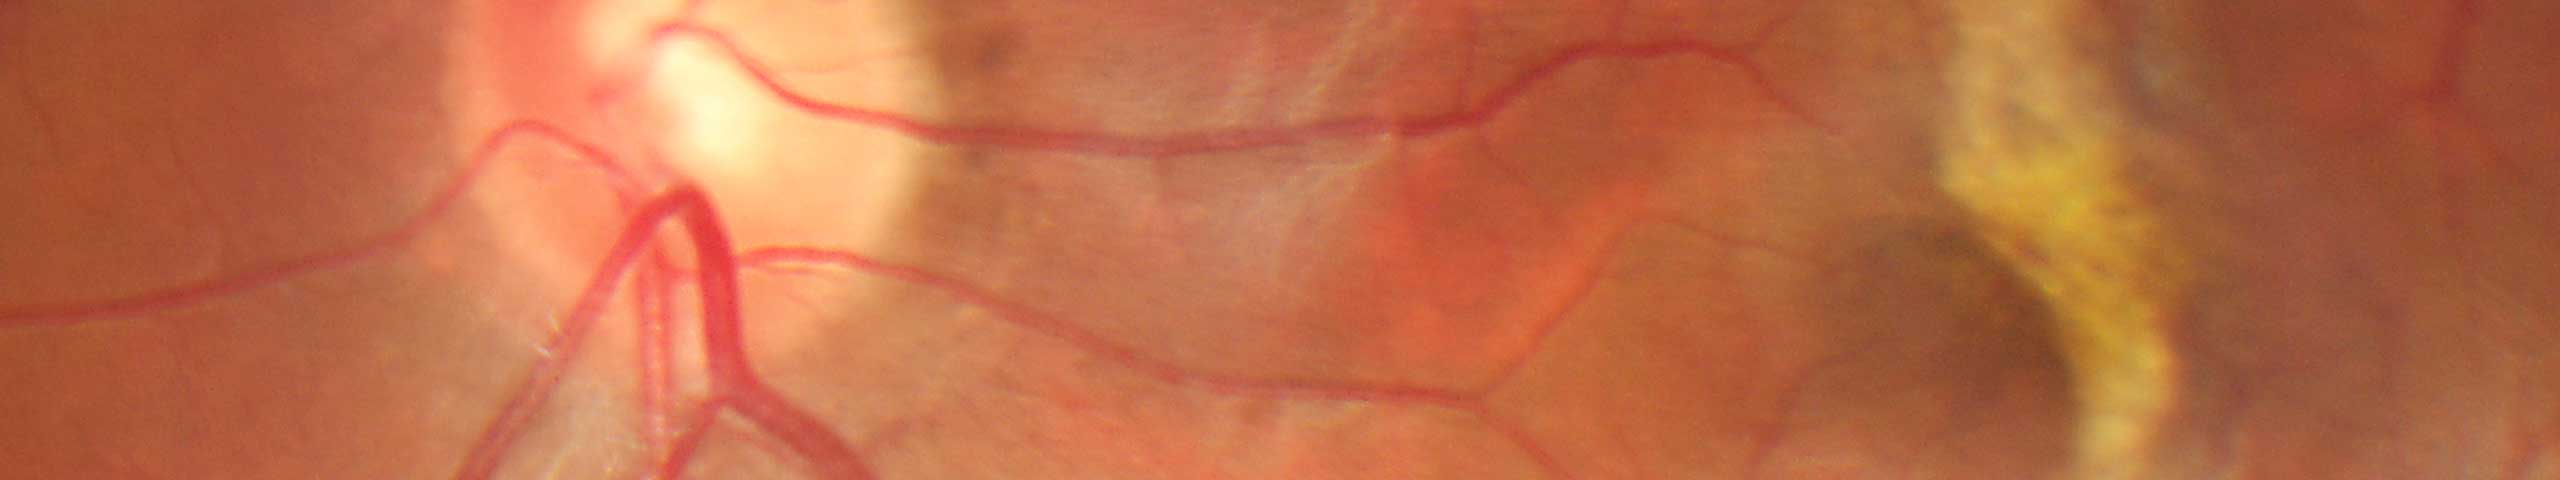 Macular pucker / pre-retinal membrane.